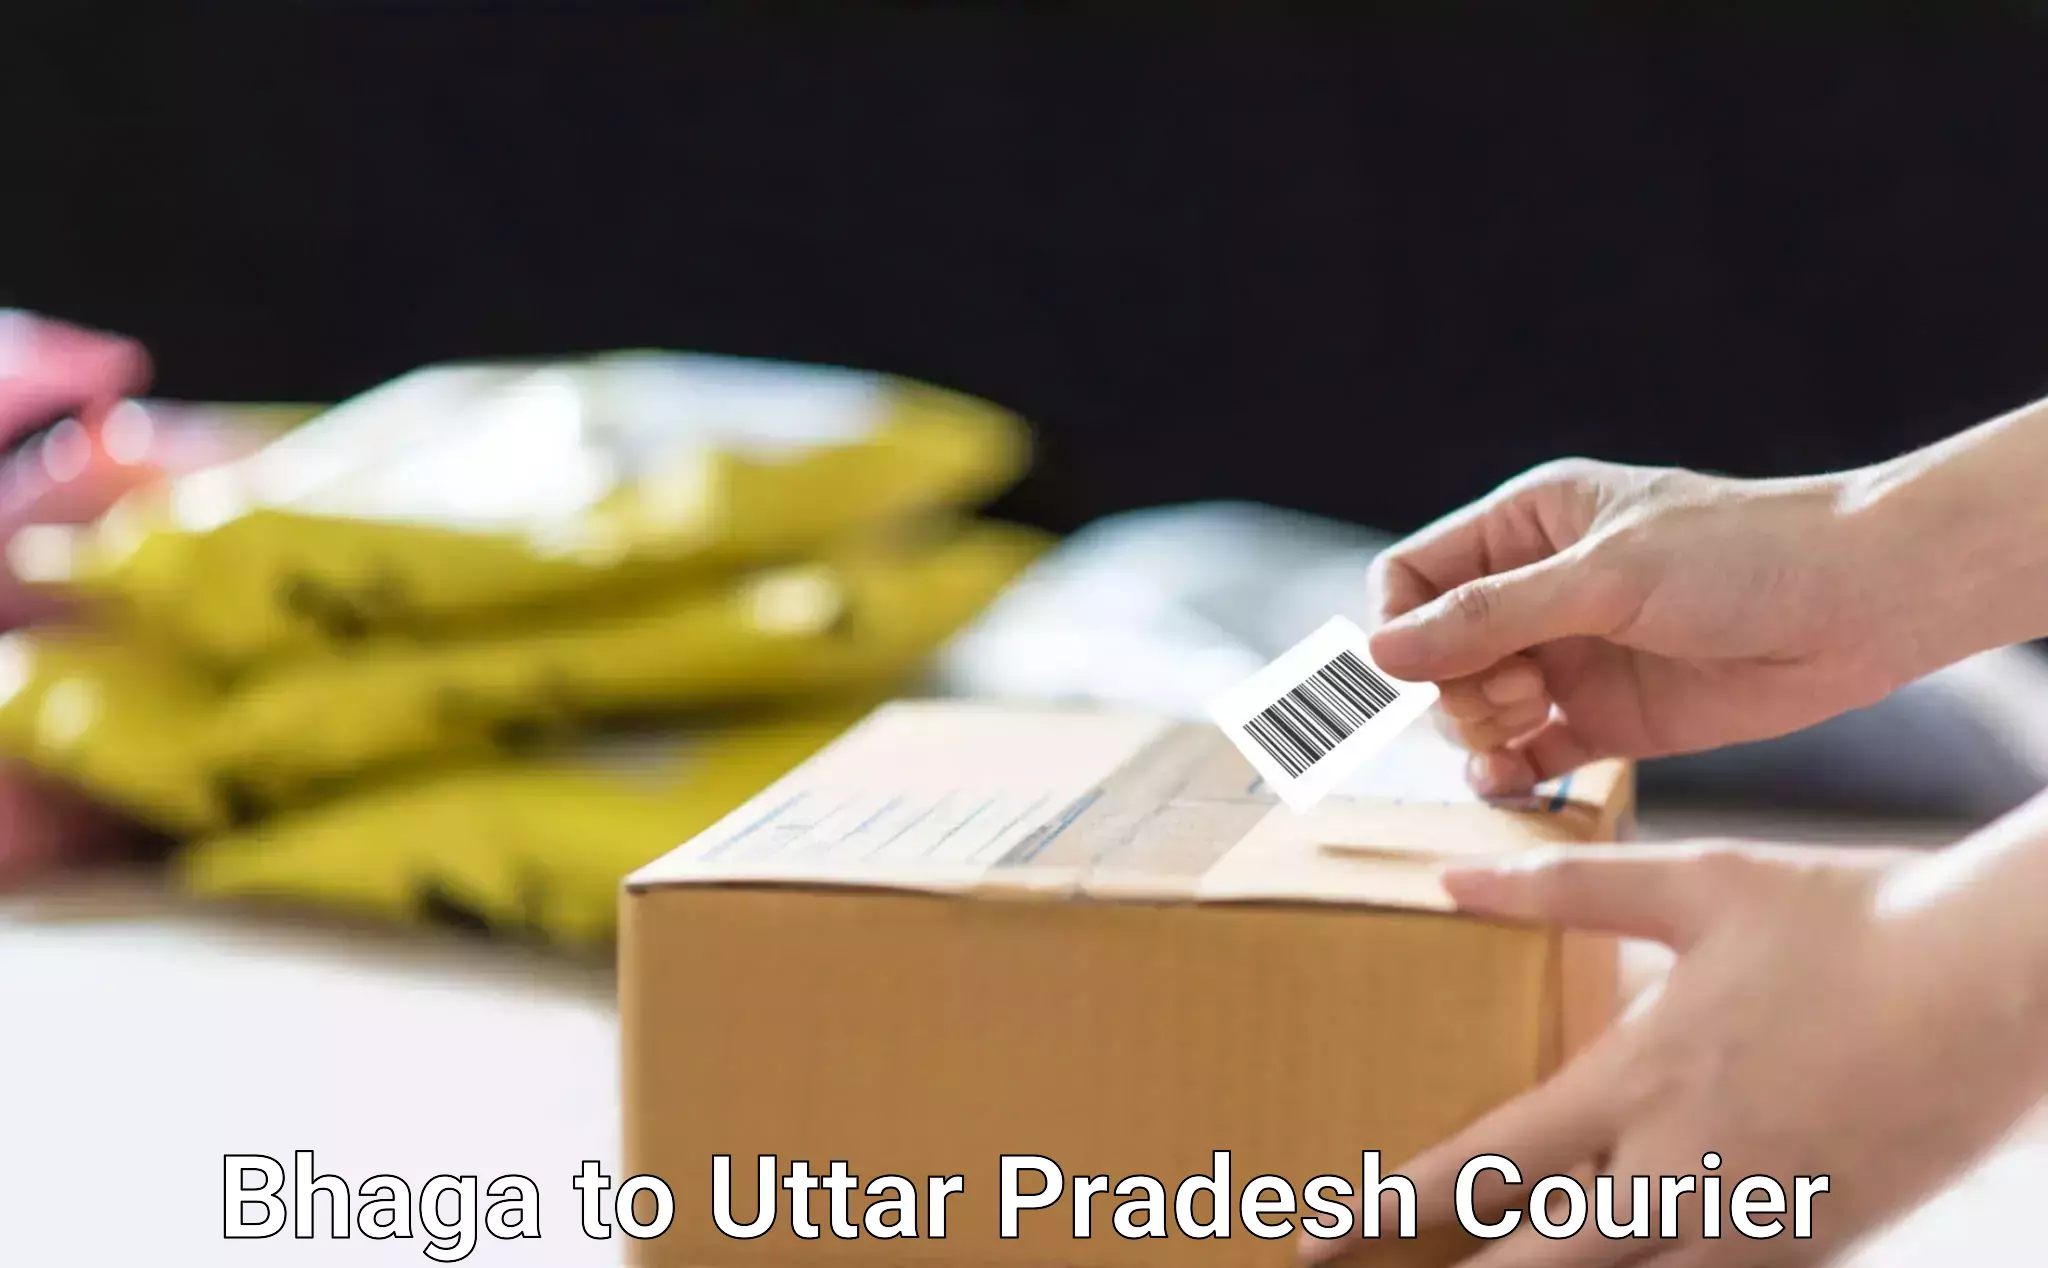 Bulk order courier Bhaga to Agra